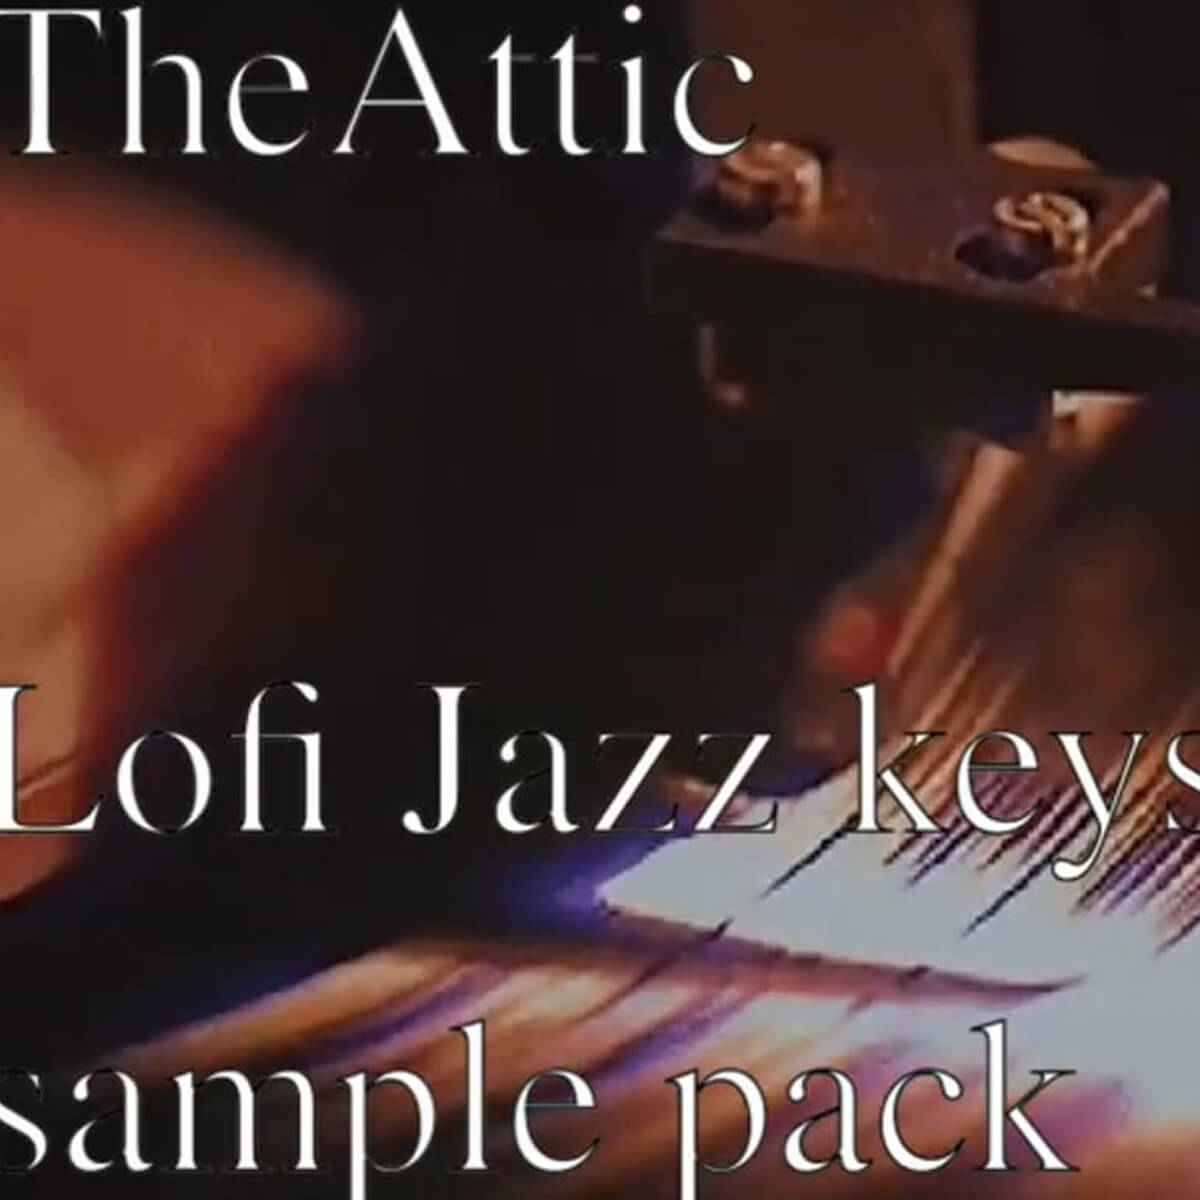 Lofi Jazz Keys Sample Pack